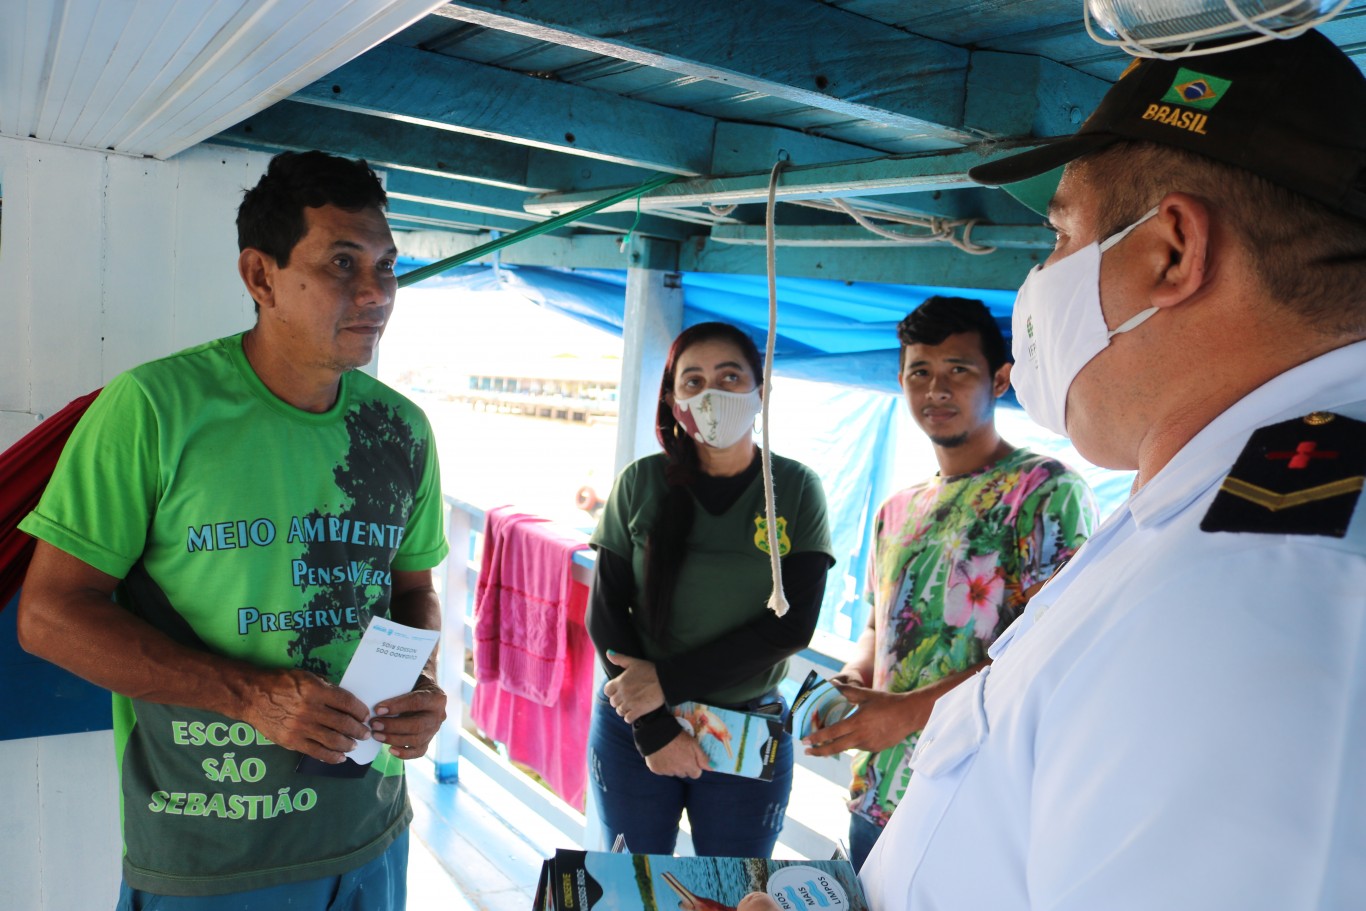 Campanha Rios + Limpos conscientiza donos de embarcações na Orla Fluvial